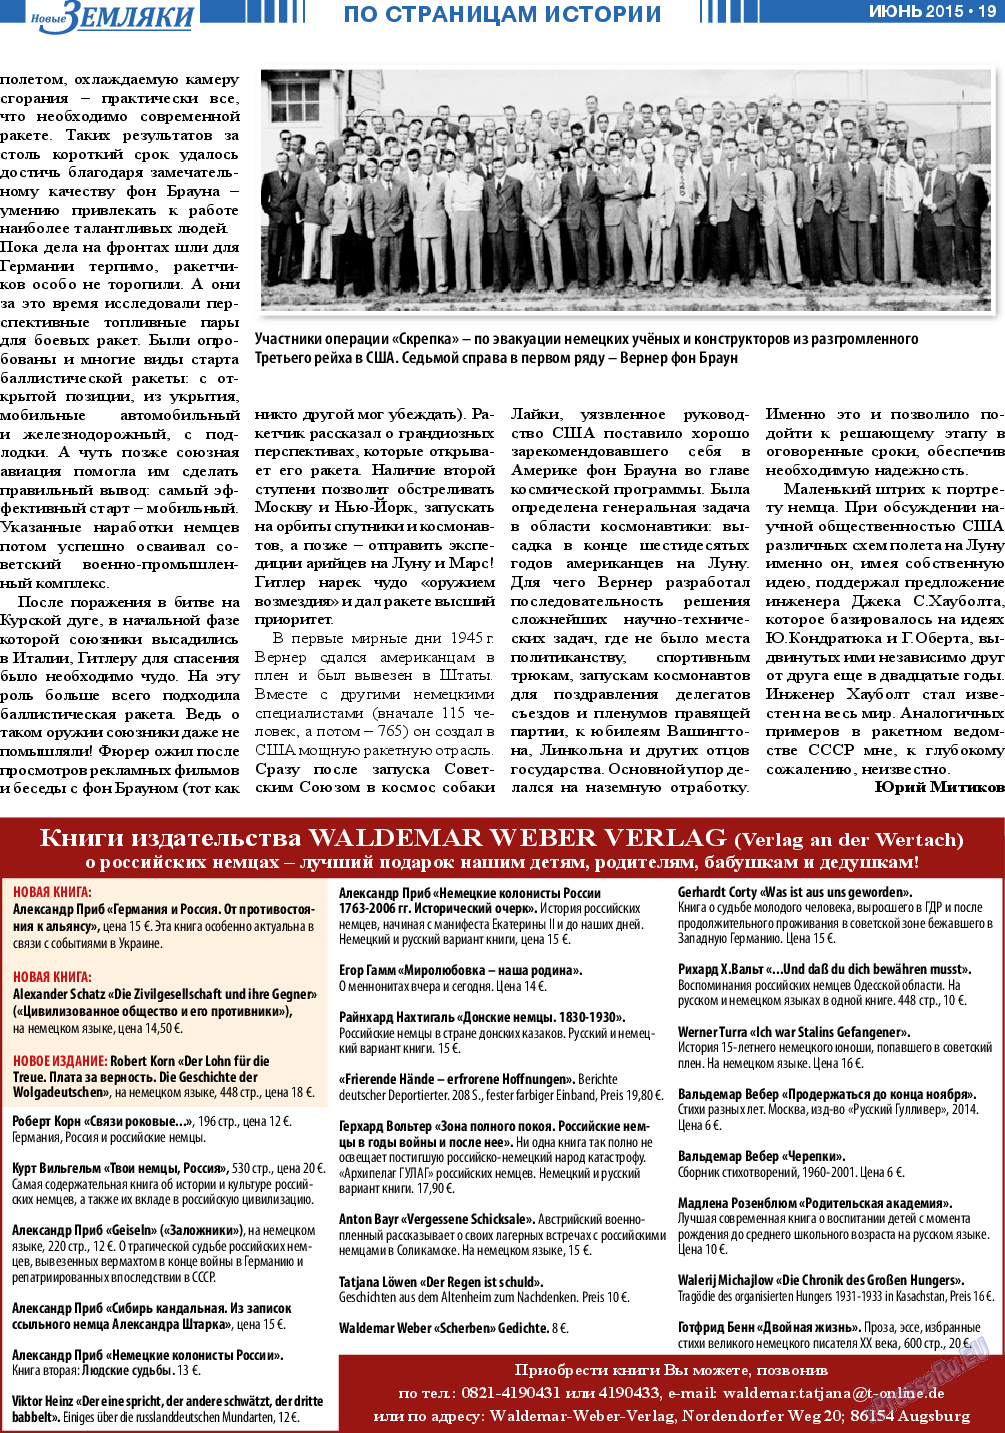 Новые Земляки, газета. 2015 №6 стр.19